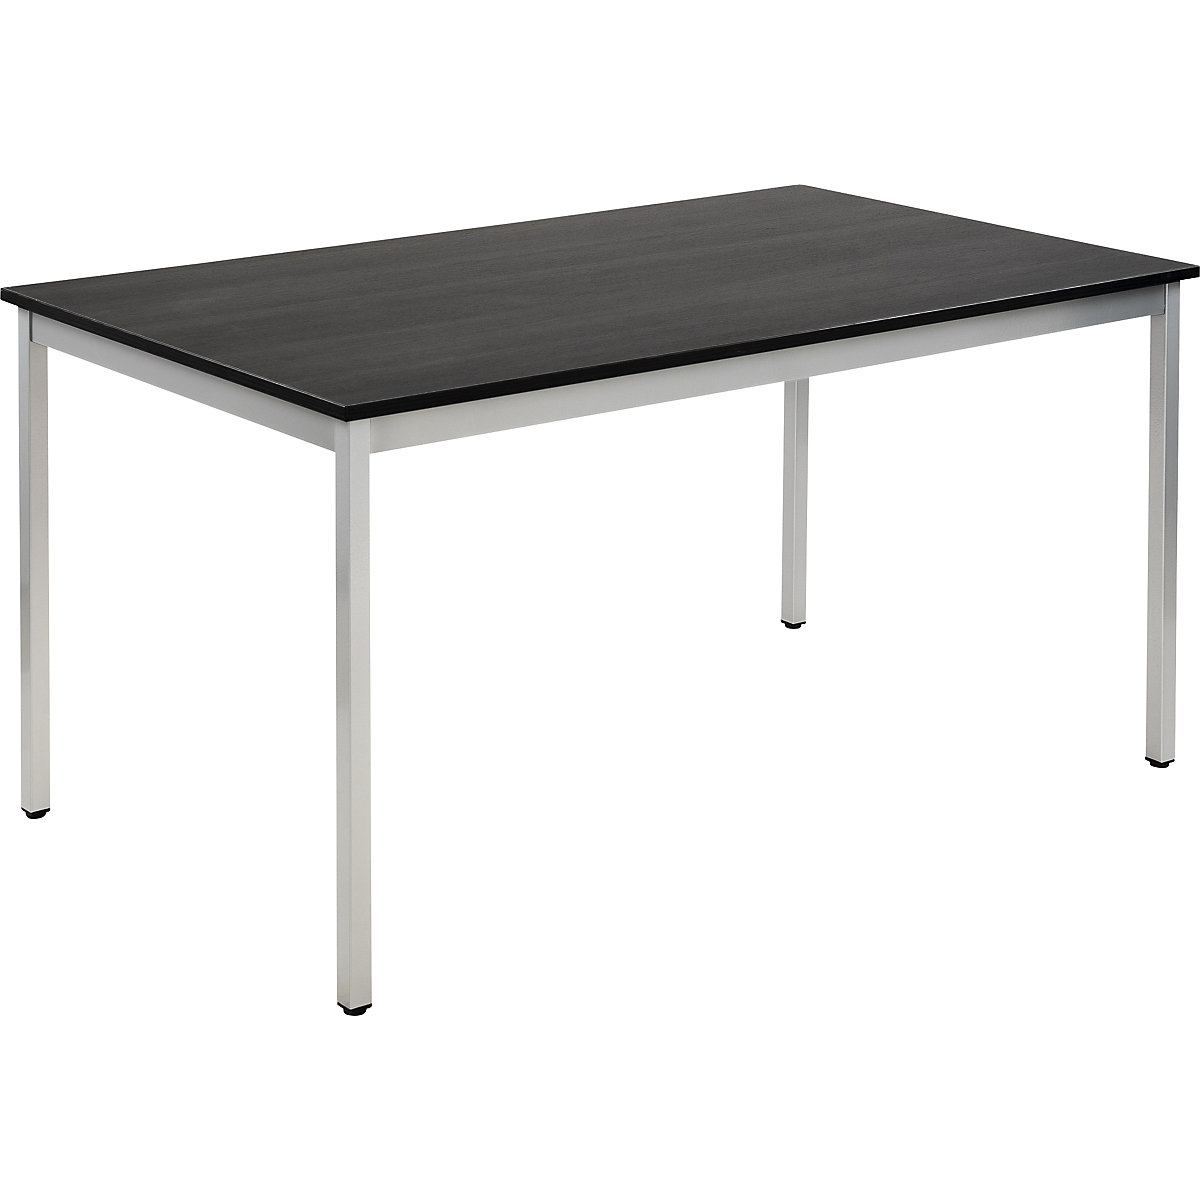 Víceúčelový stůl – eurokraft basic, obdélníkový tvar, š x v 1400 x 740 mm, hloubka 800 mm, deska v jasanovém dekoru tmavá šedá, podstavec v barvě bílý hliník-13